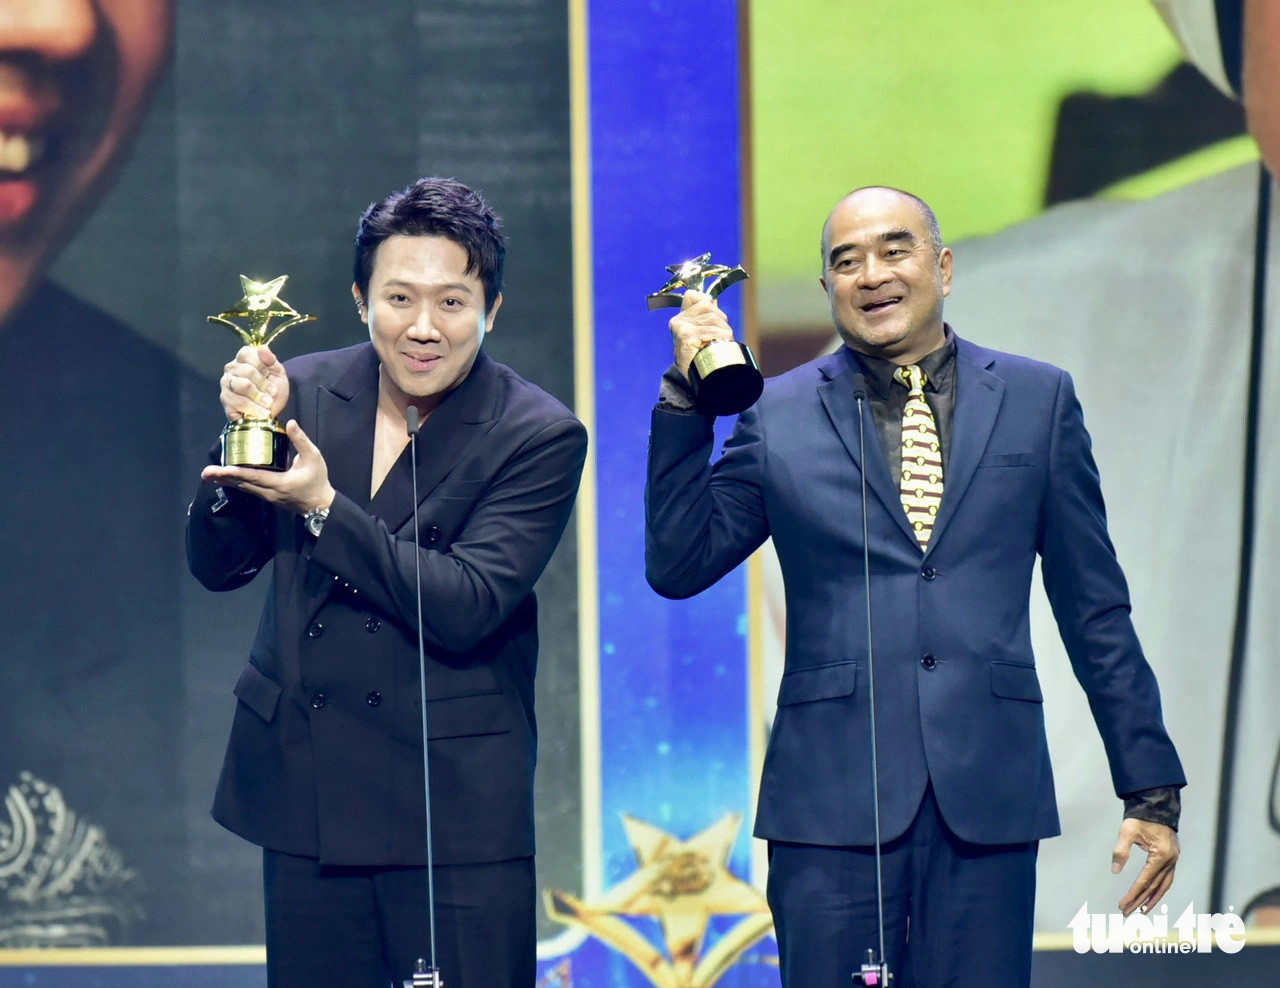 Đạo diễn Nhâm Minh Hiền, đạo diễn Trấn Thành nhận giải thưởng Ngôi sao xanh ở hạng mục đạo diễn - Ảnh: T.T.D.